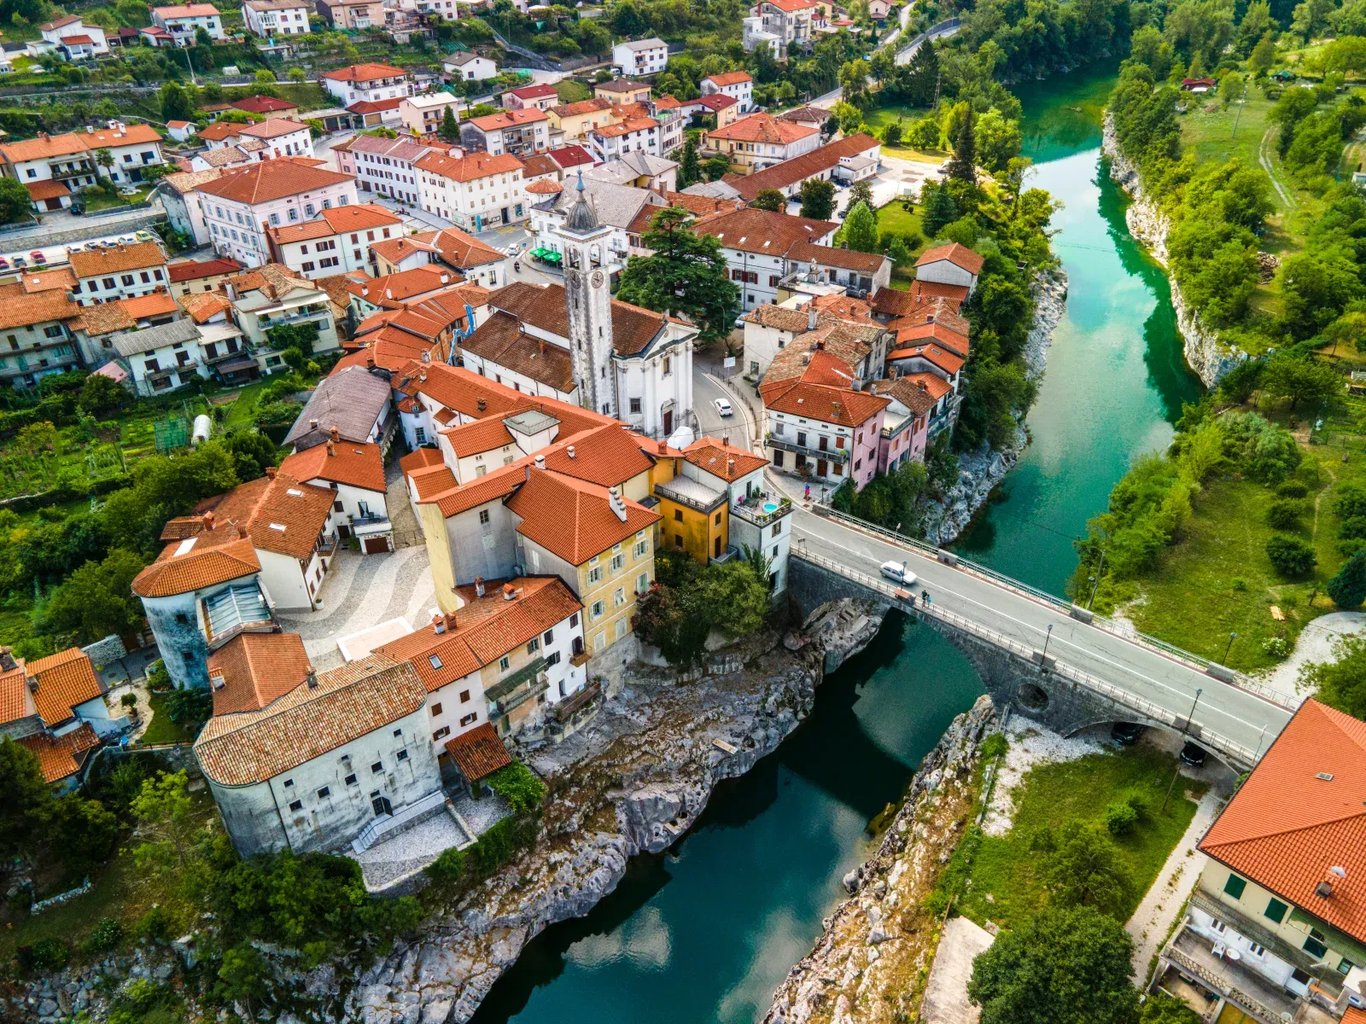 Kanal ob Soci, Slovenia - Gem of the Soca Valley